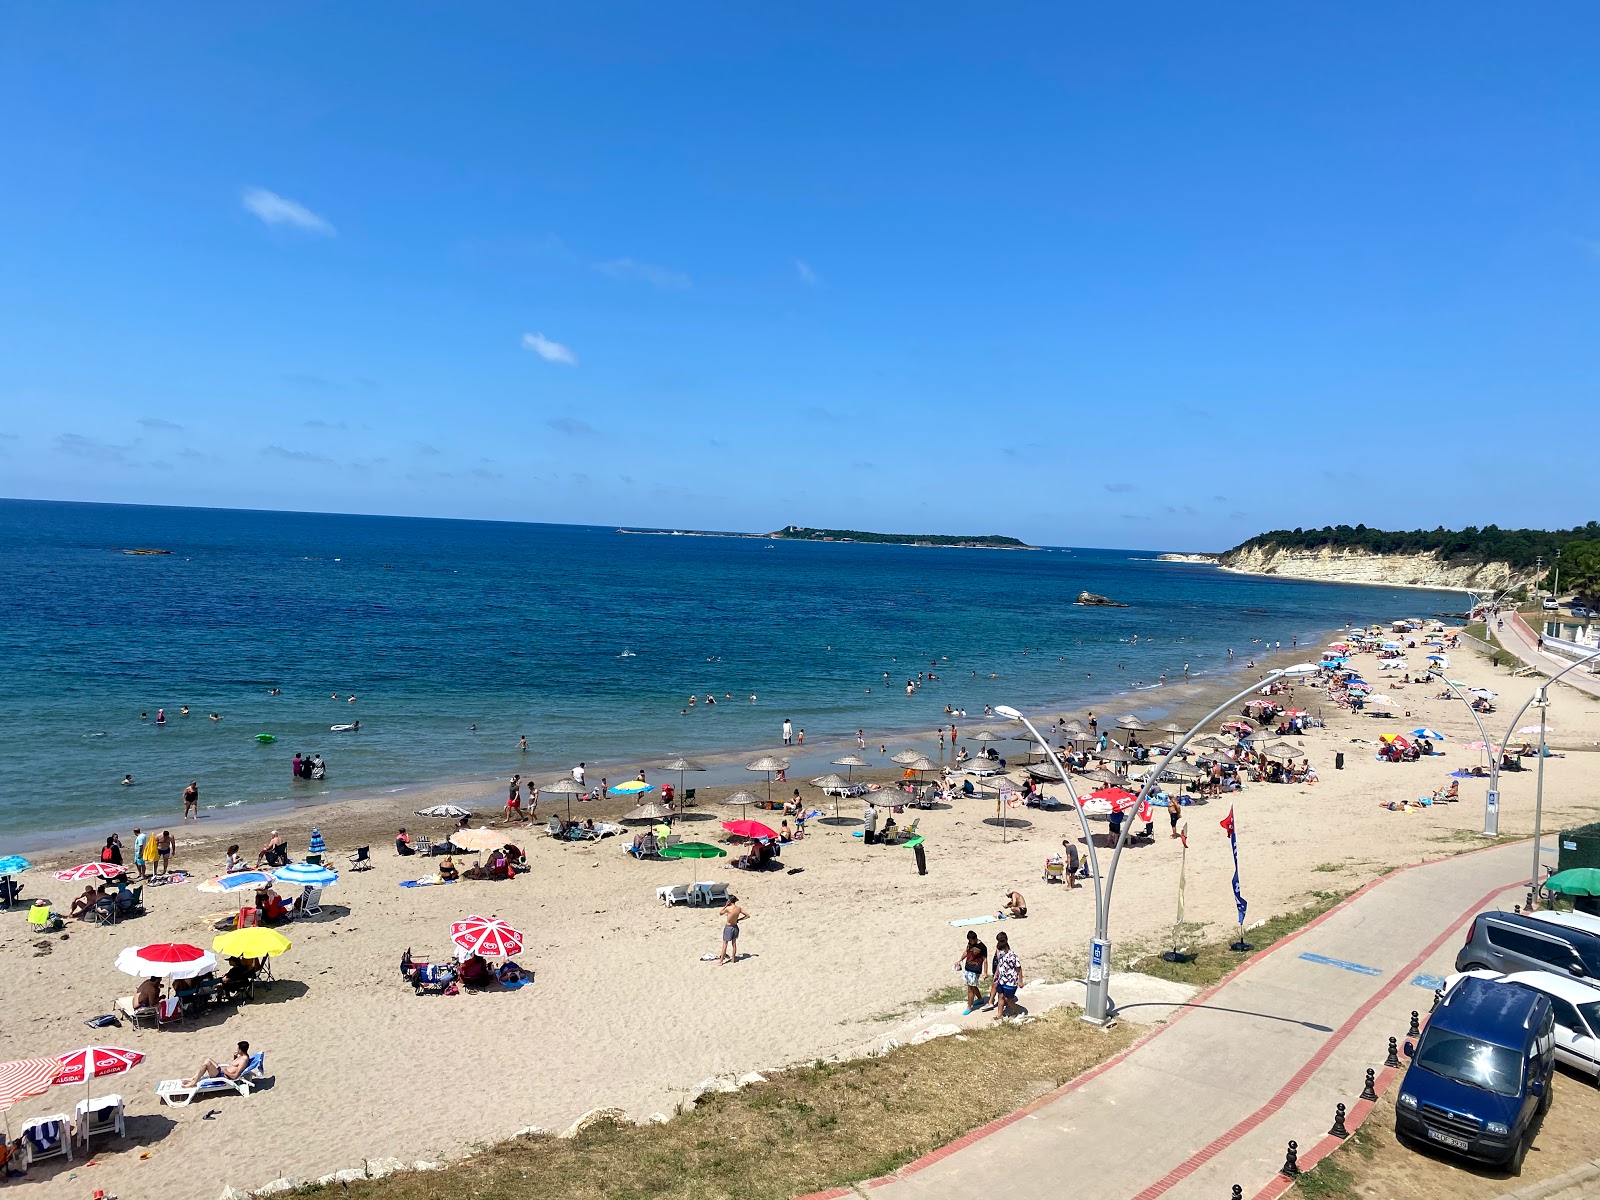 Cebeci Radio Plaj'in fotoğrafı parlak kum yüzey ile